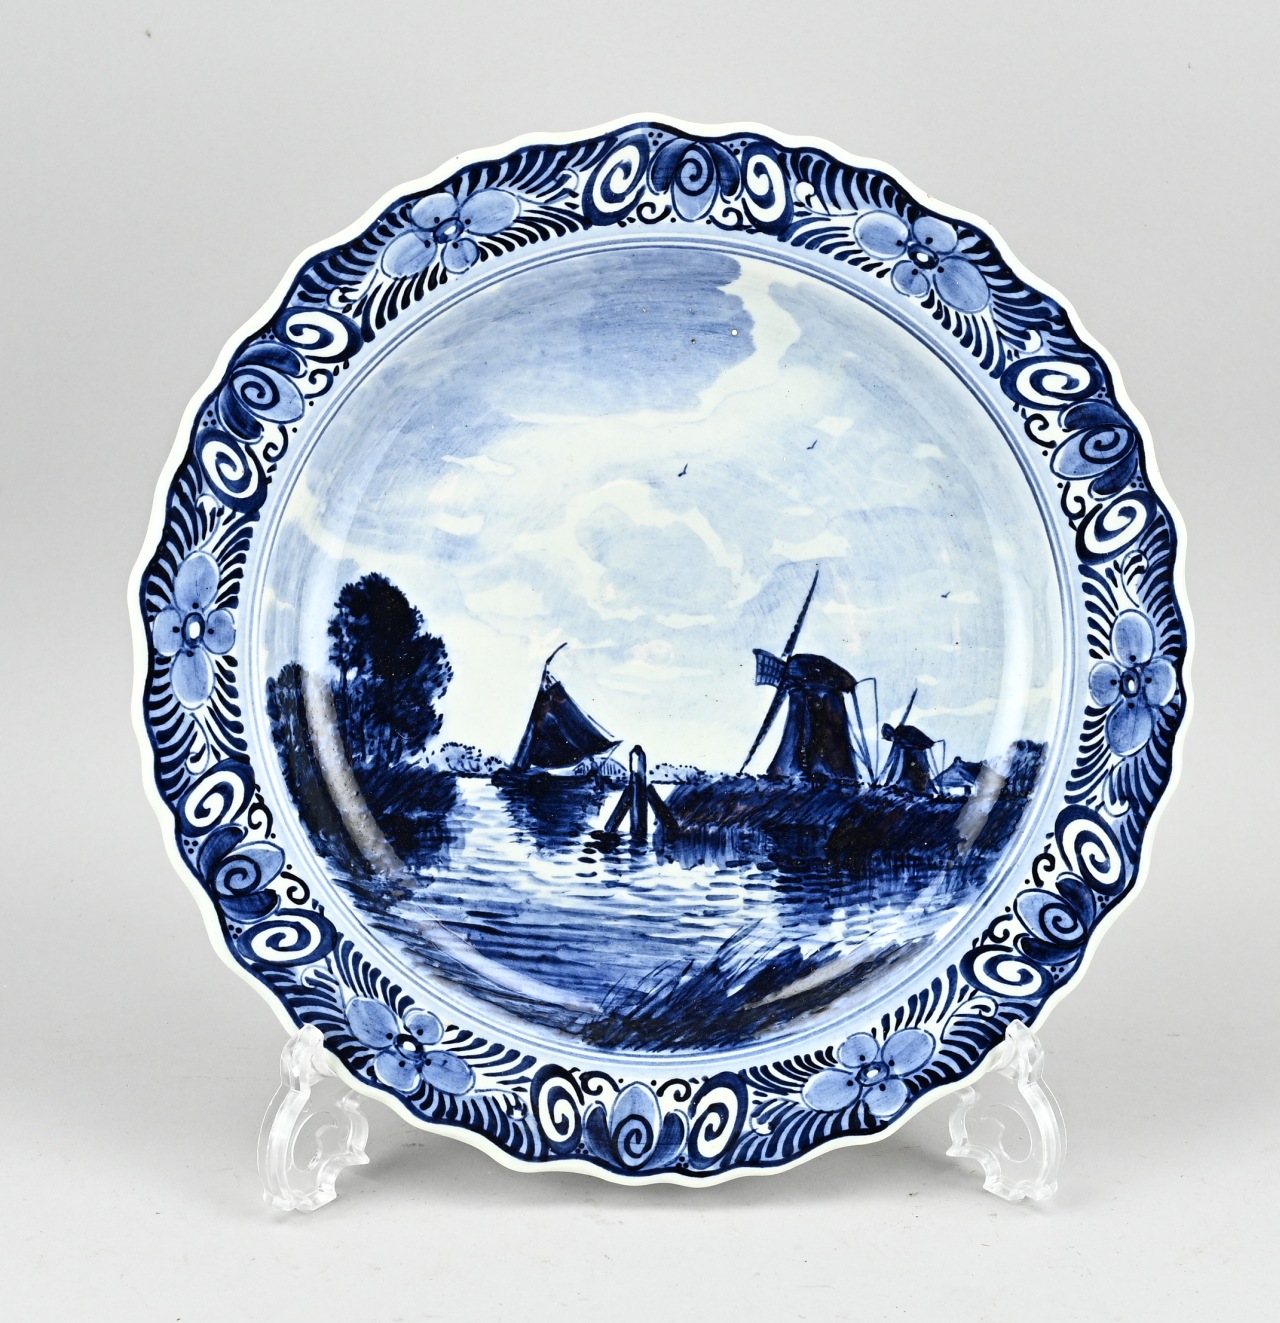 Delft blue plate Ã˜ 29.5 cm.